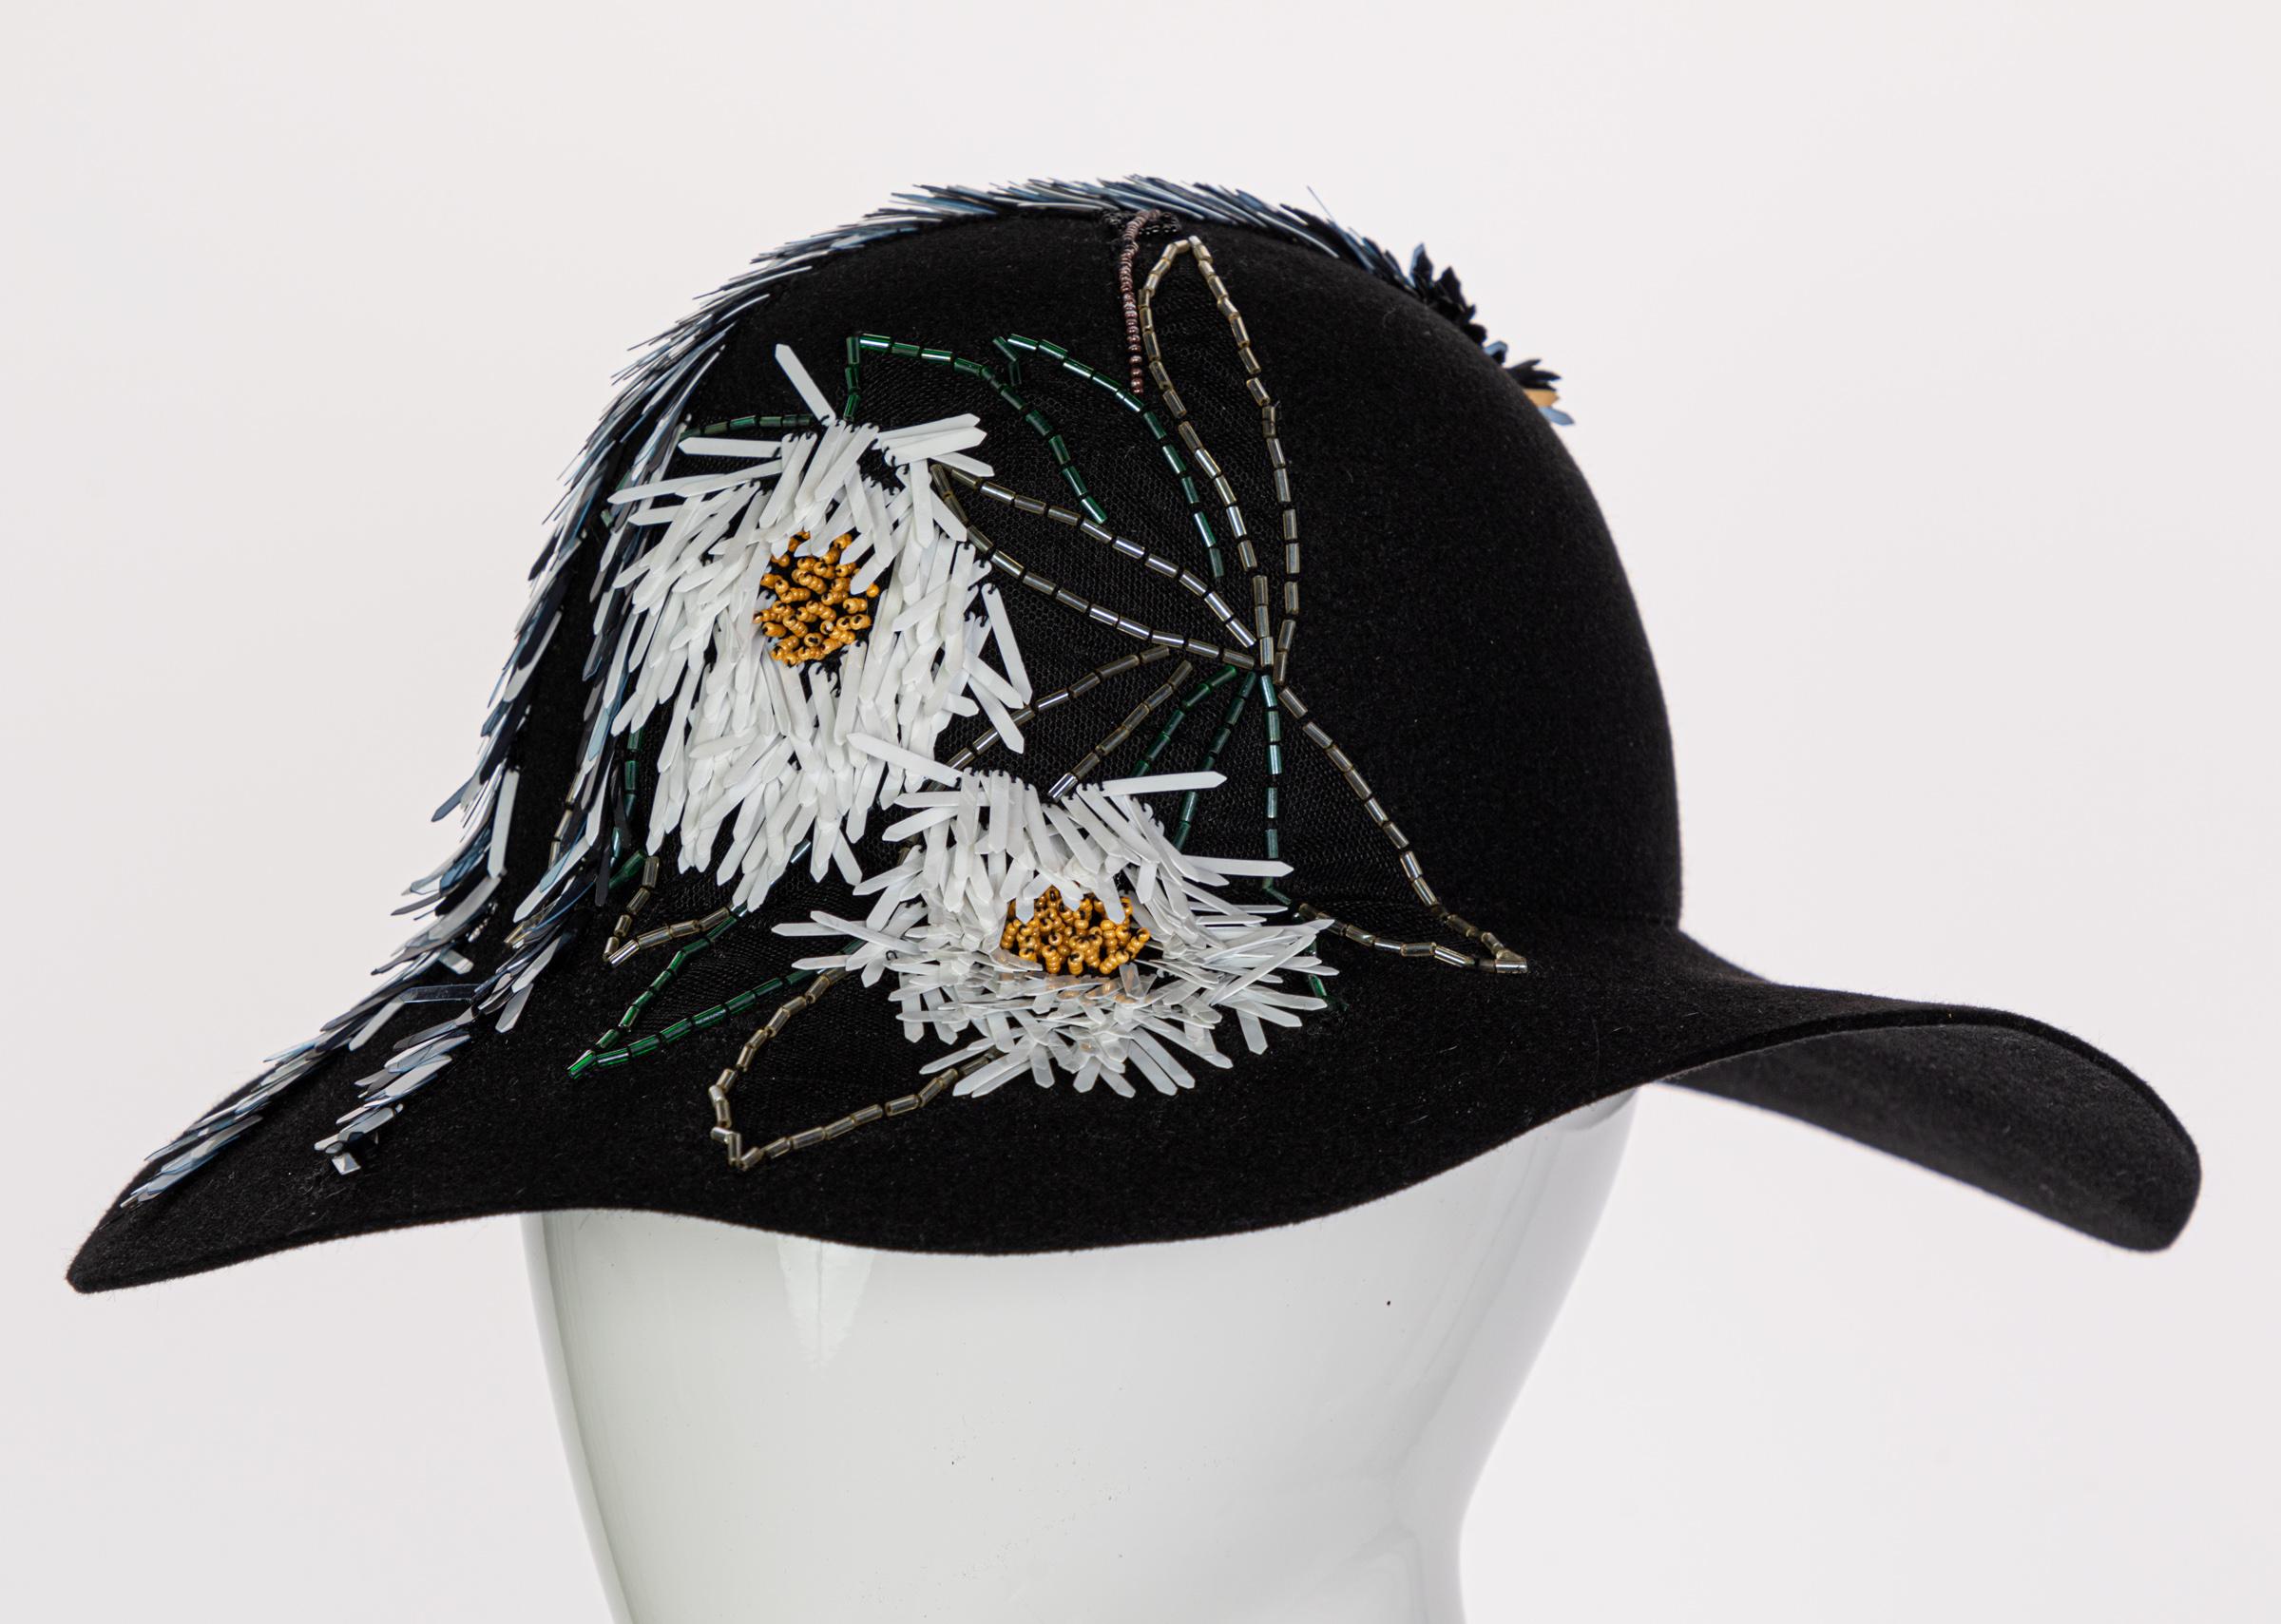 Lanvin Alber Elbaz Embellished Black Felt Hat, 2015 1